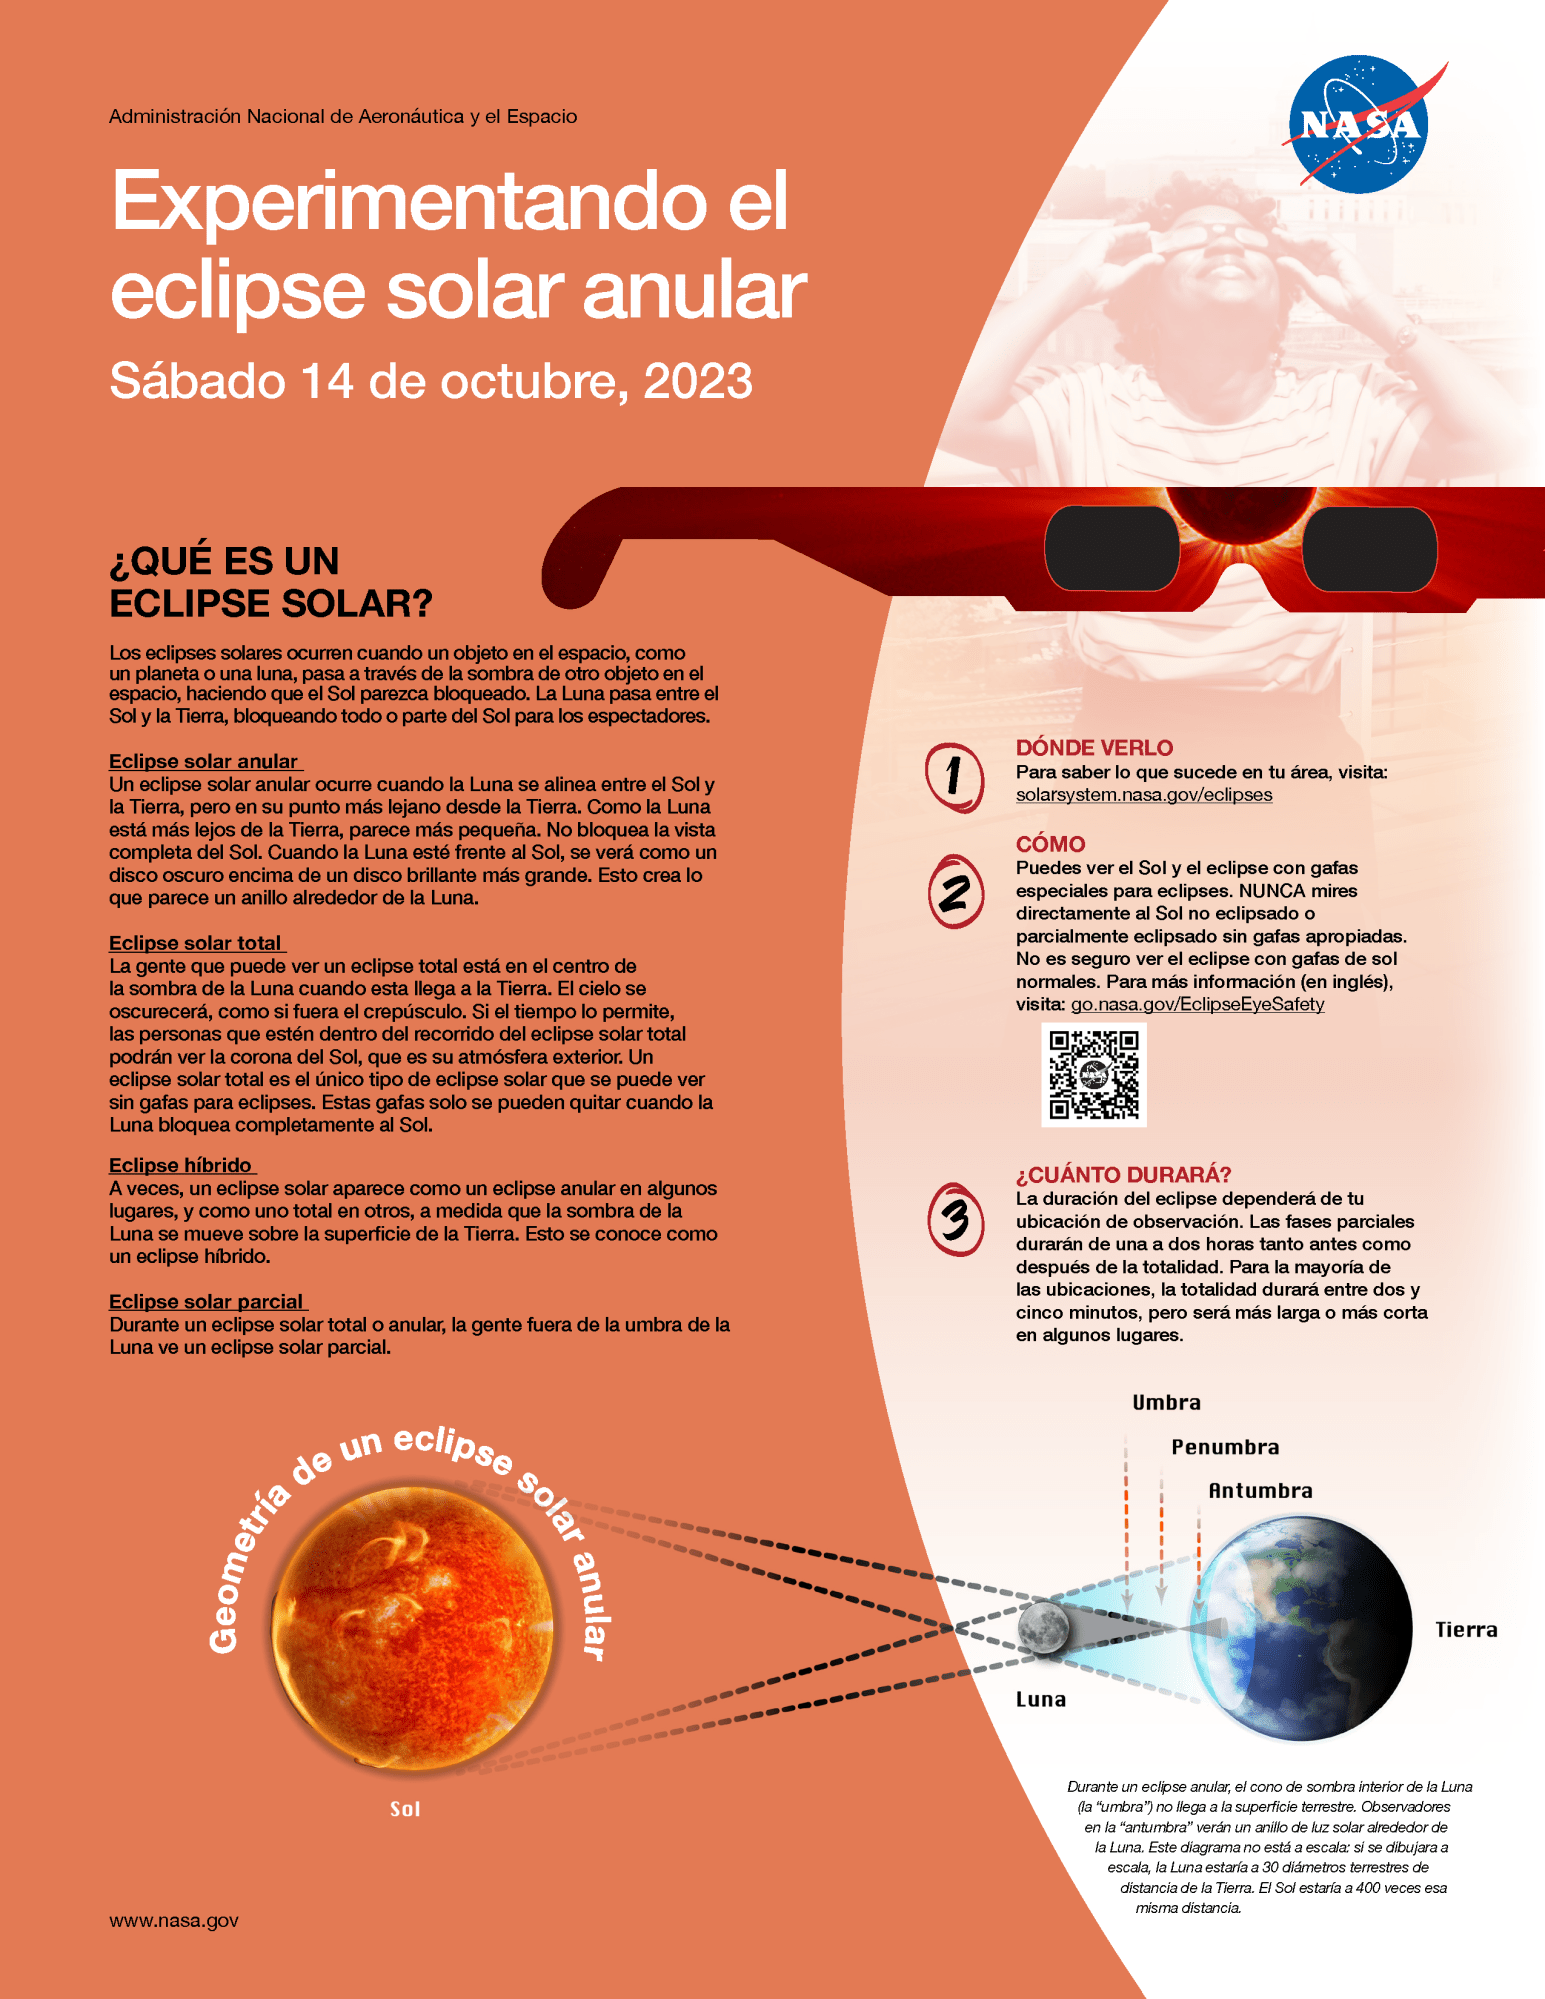 Información sobre el eclipse anular del 14 de octubre de 2023